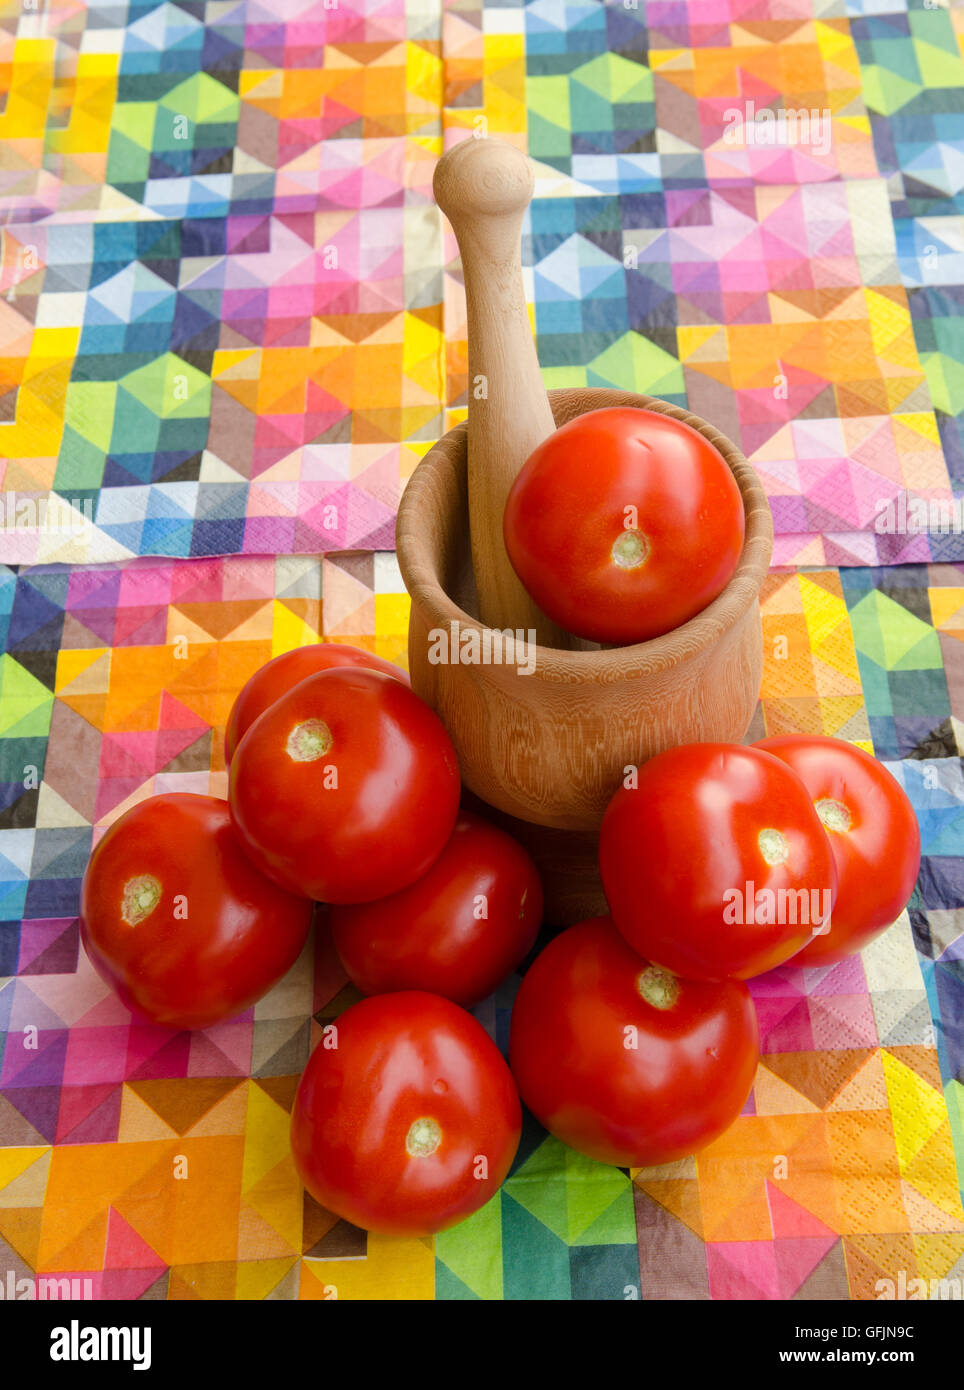 Los tomates apiladas contra un mortero Foto de stock